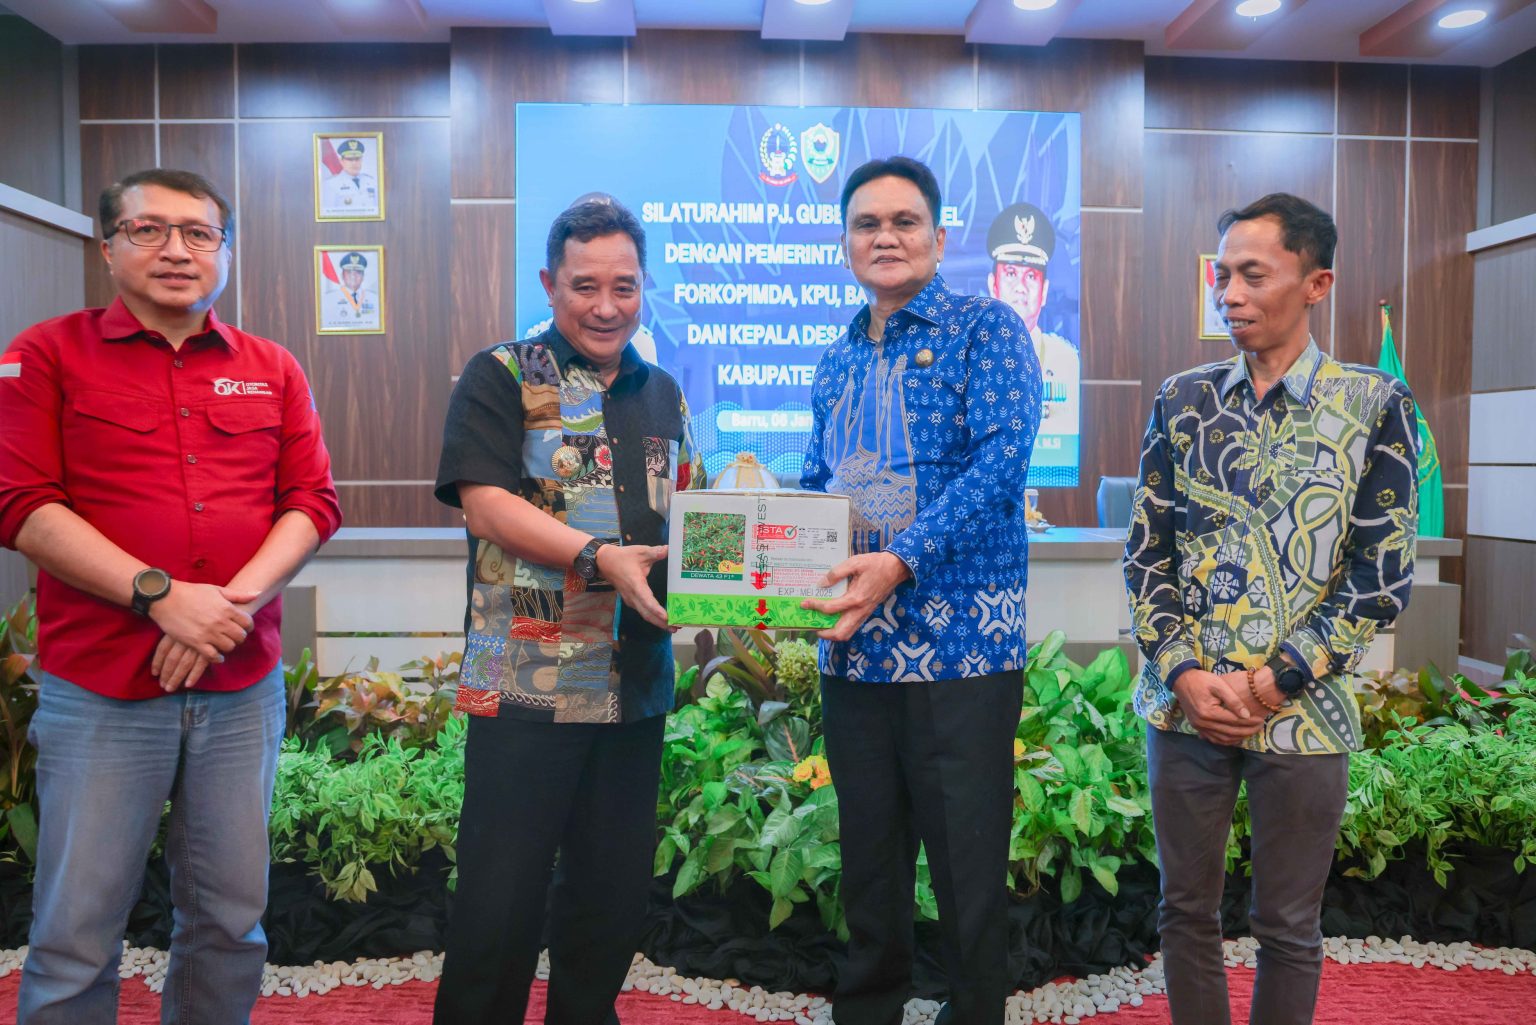 Kunjungan Silaturahmi Pj Gubernur Sulawesi Selatan dengan Pemerintah Daerah Kabupaten Barru